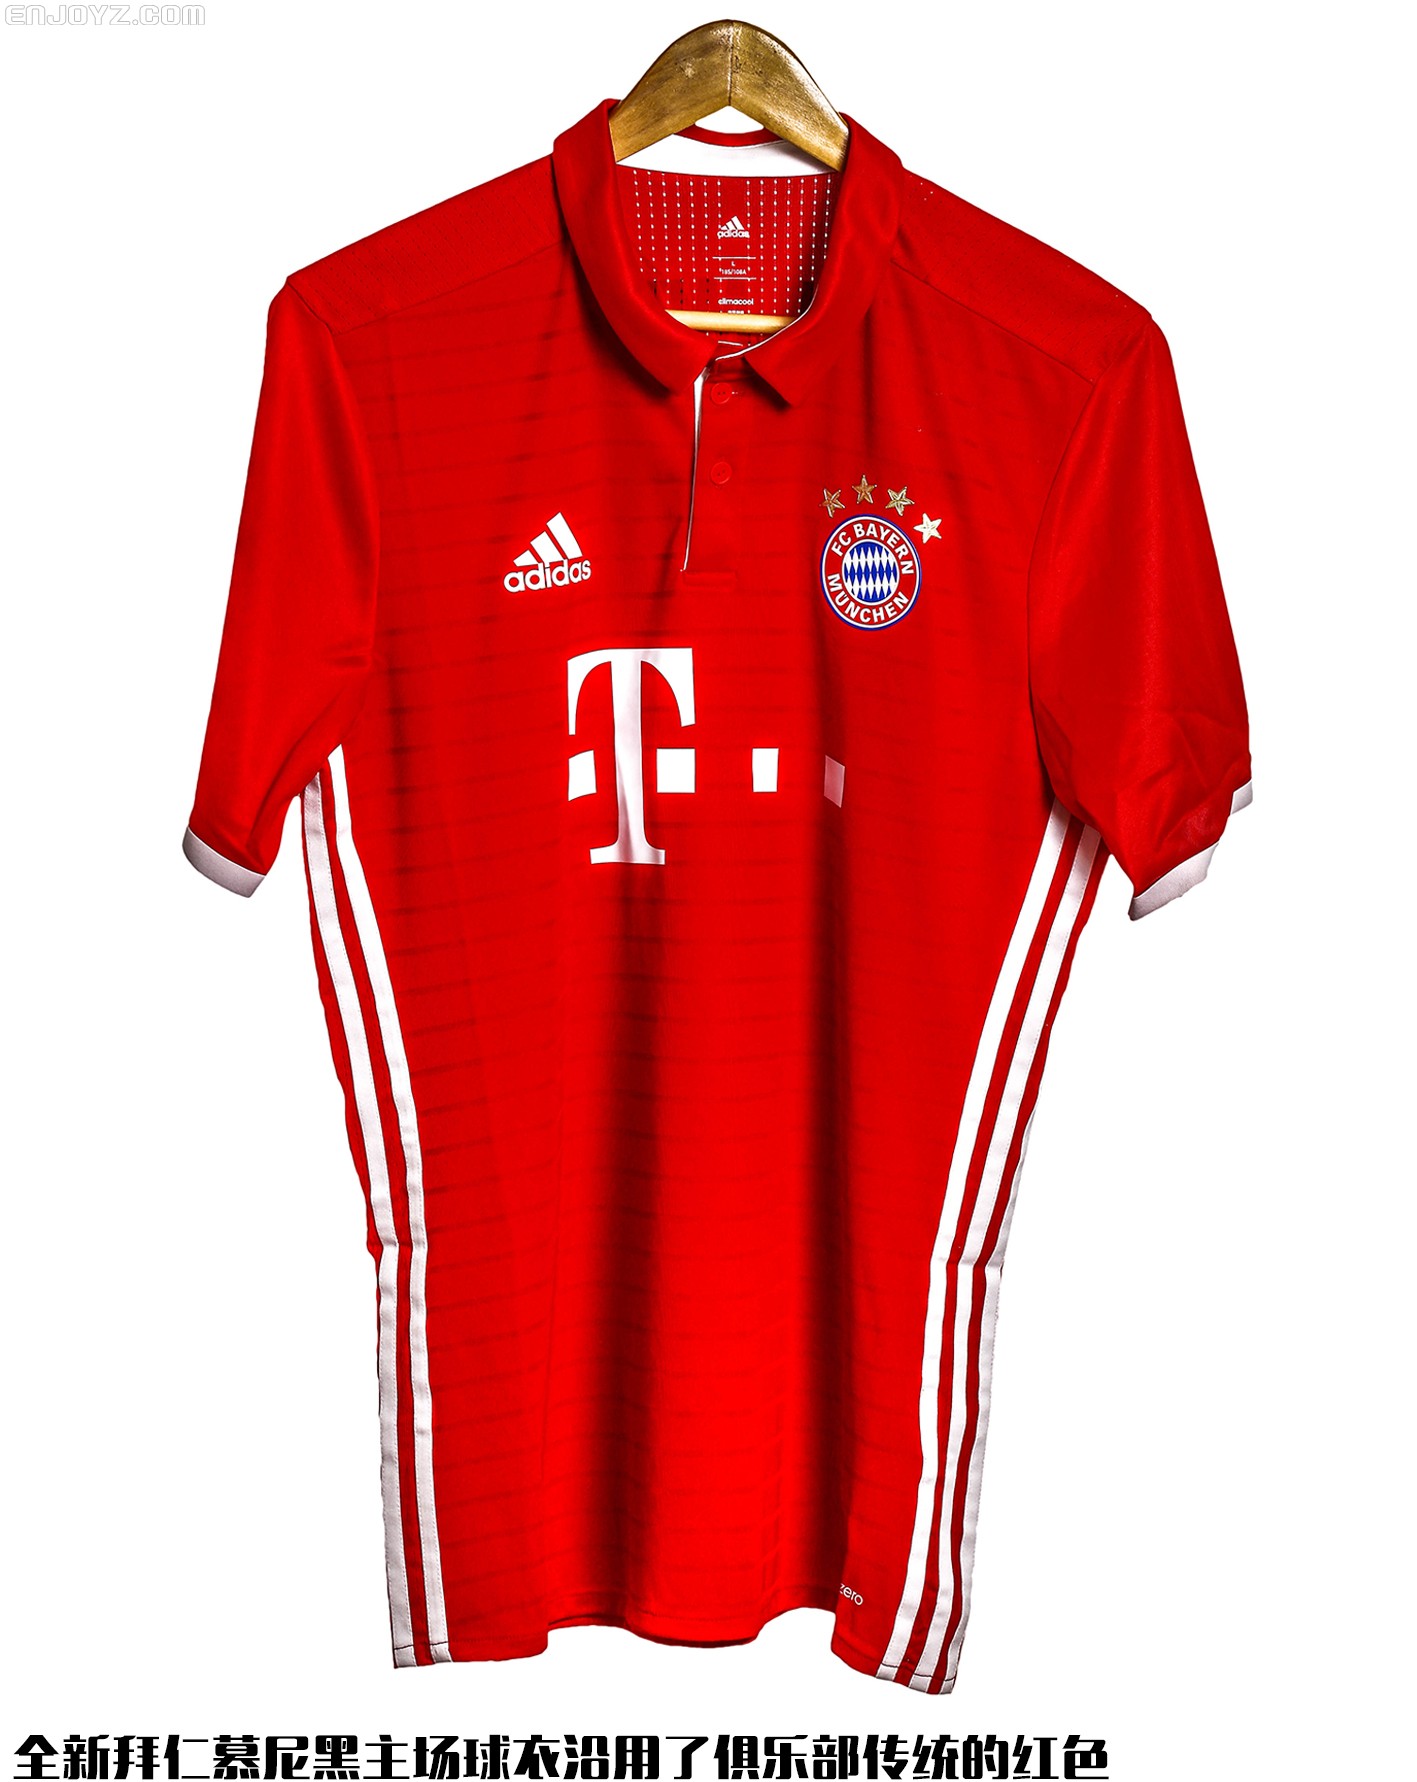 拜仁慕尼黑2020/21赛季主场球衣发布 - 球衣 - 足球鞋足球装备门户_ENJOYZ足球装备网